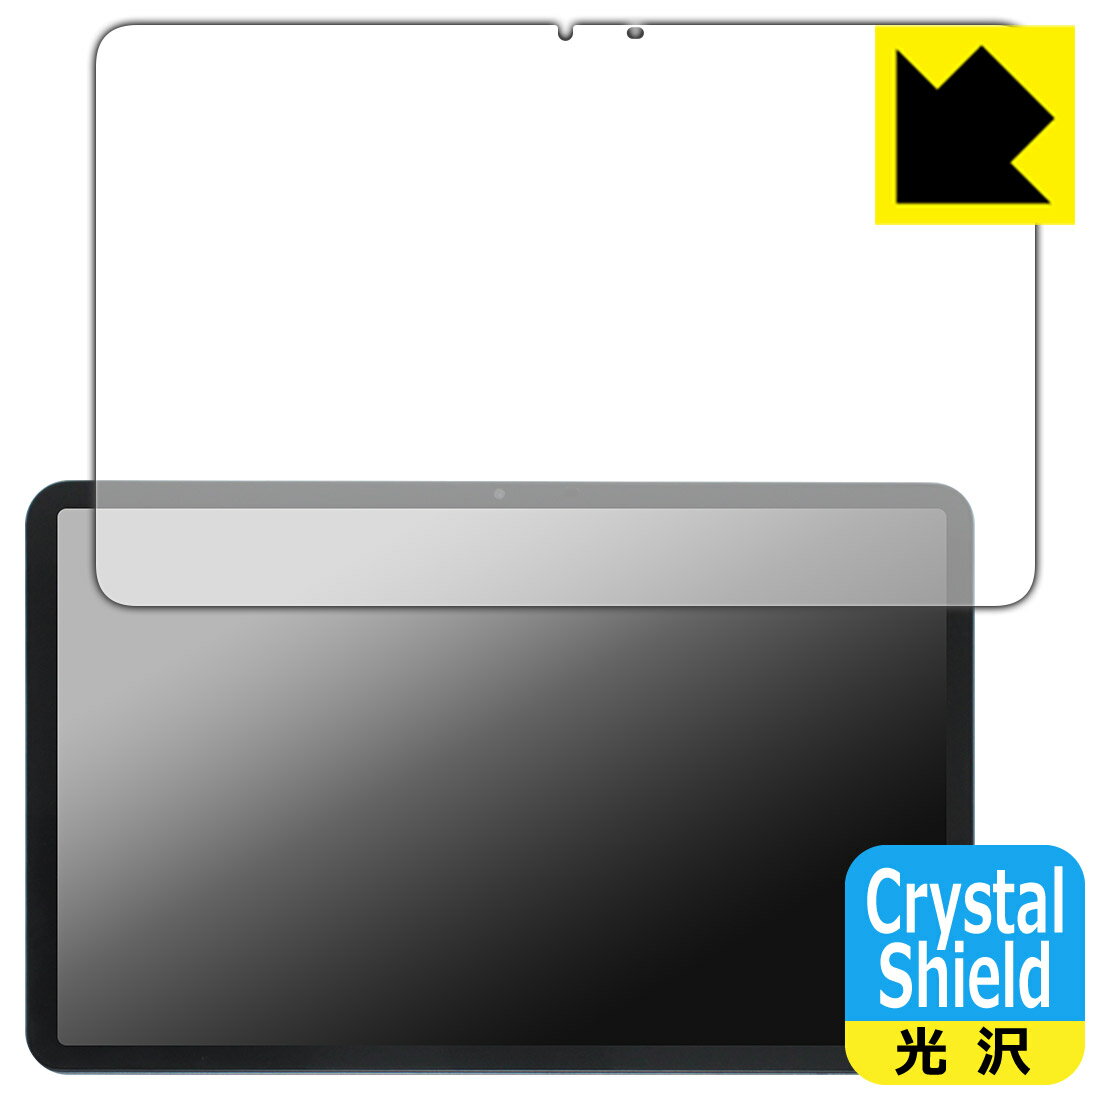 PDAH[ AvidPad A90 Ή Crystal Shield ی tB [ʗp]  { { А